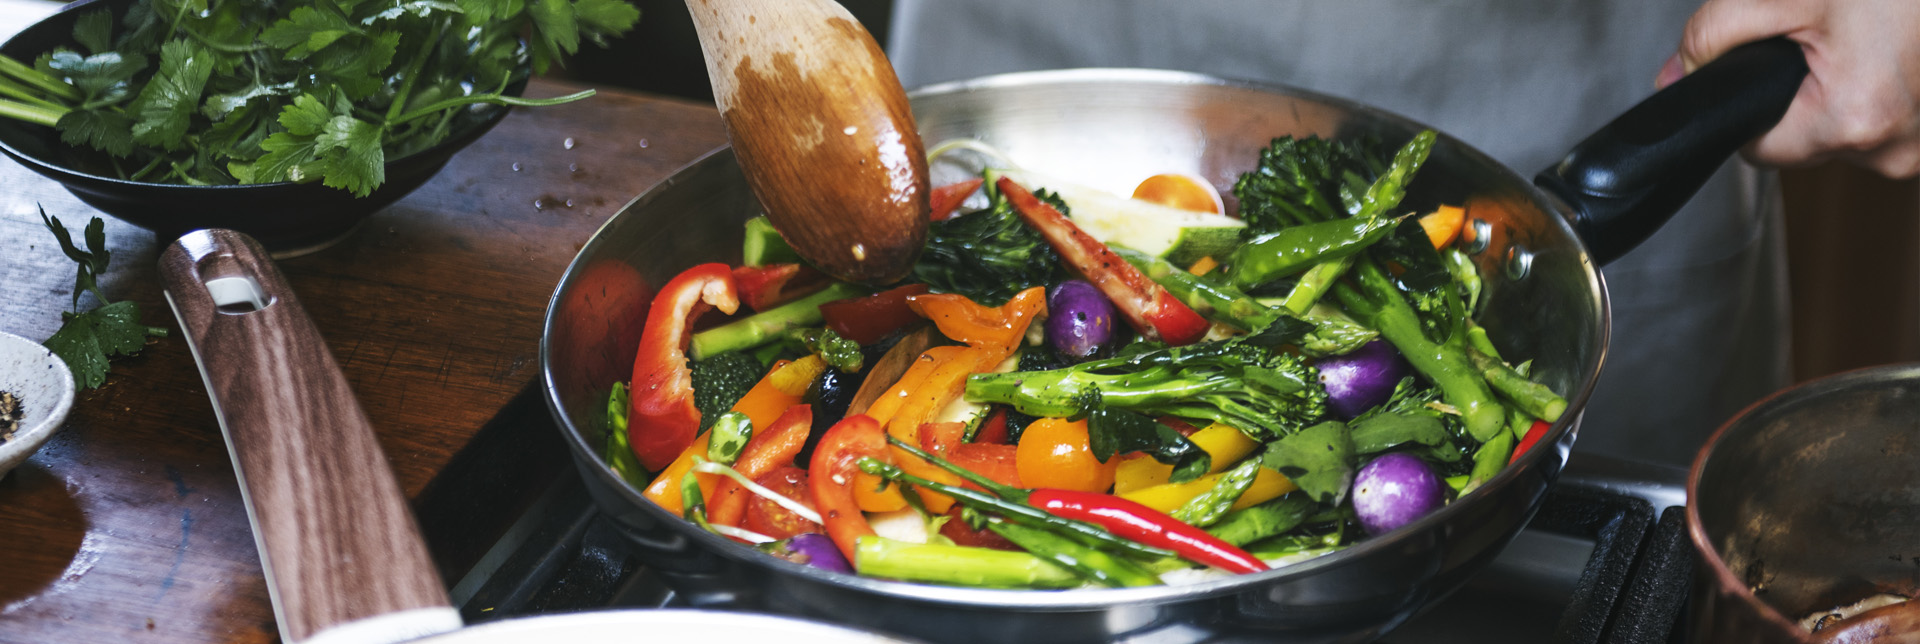 Wie sich das Kochen auf Nährstoffe in deinen Lebensmitteln auswirkt